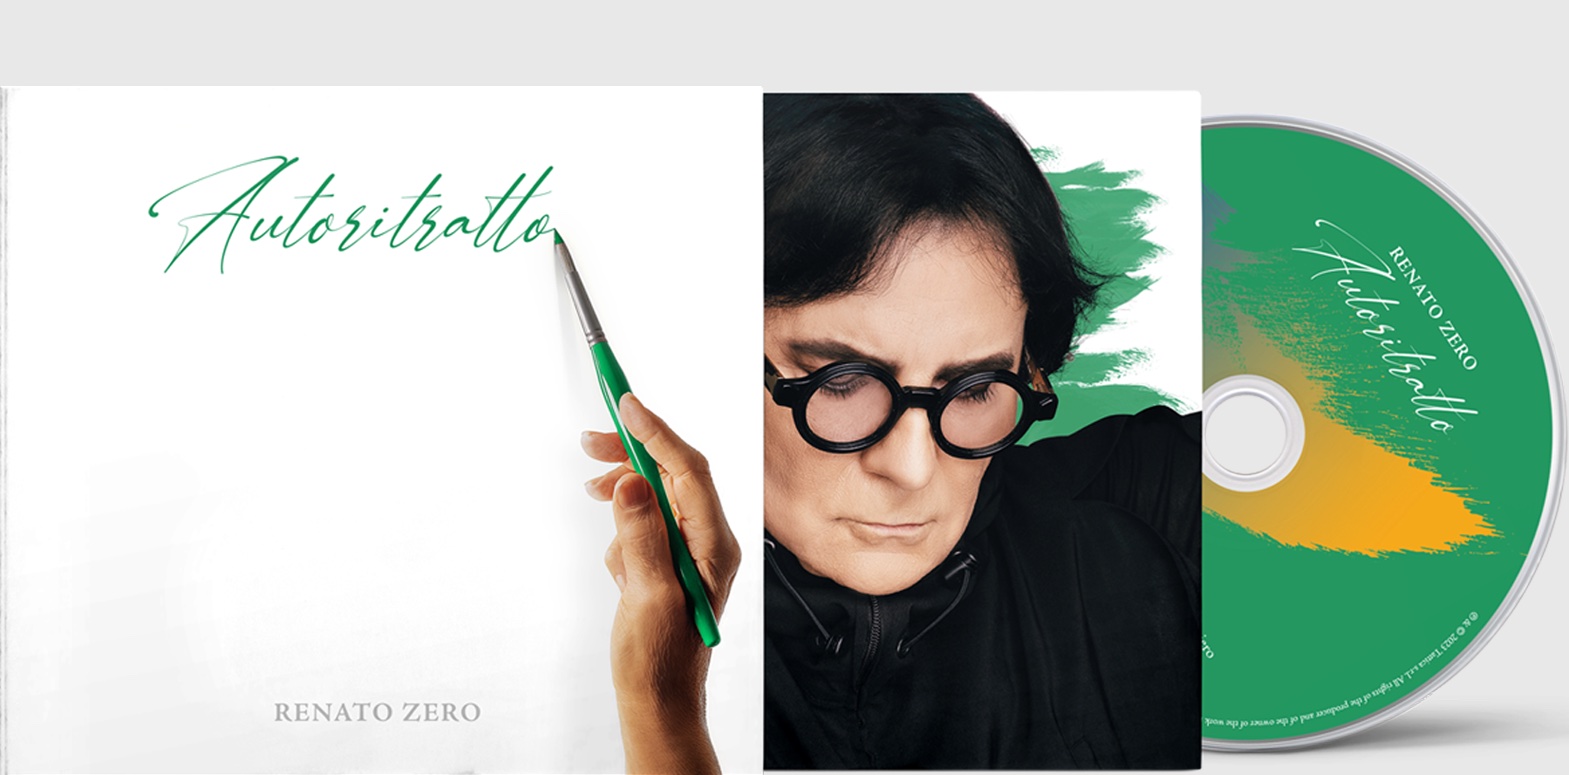 Renato Zero "Autoritratto" the new record Rome Central Mag